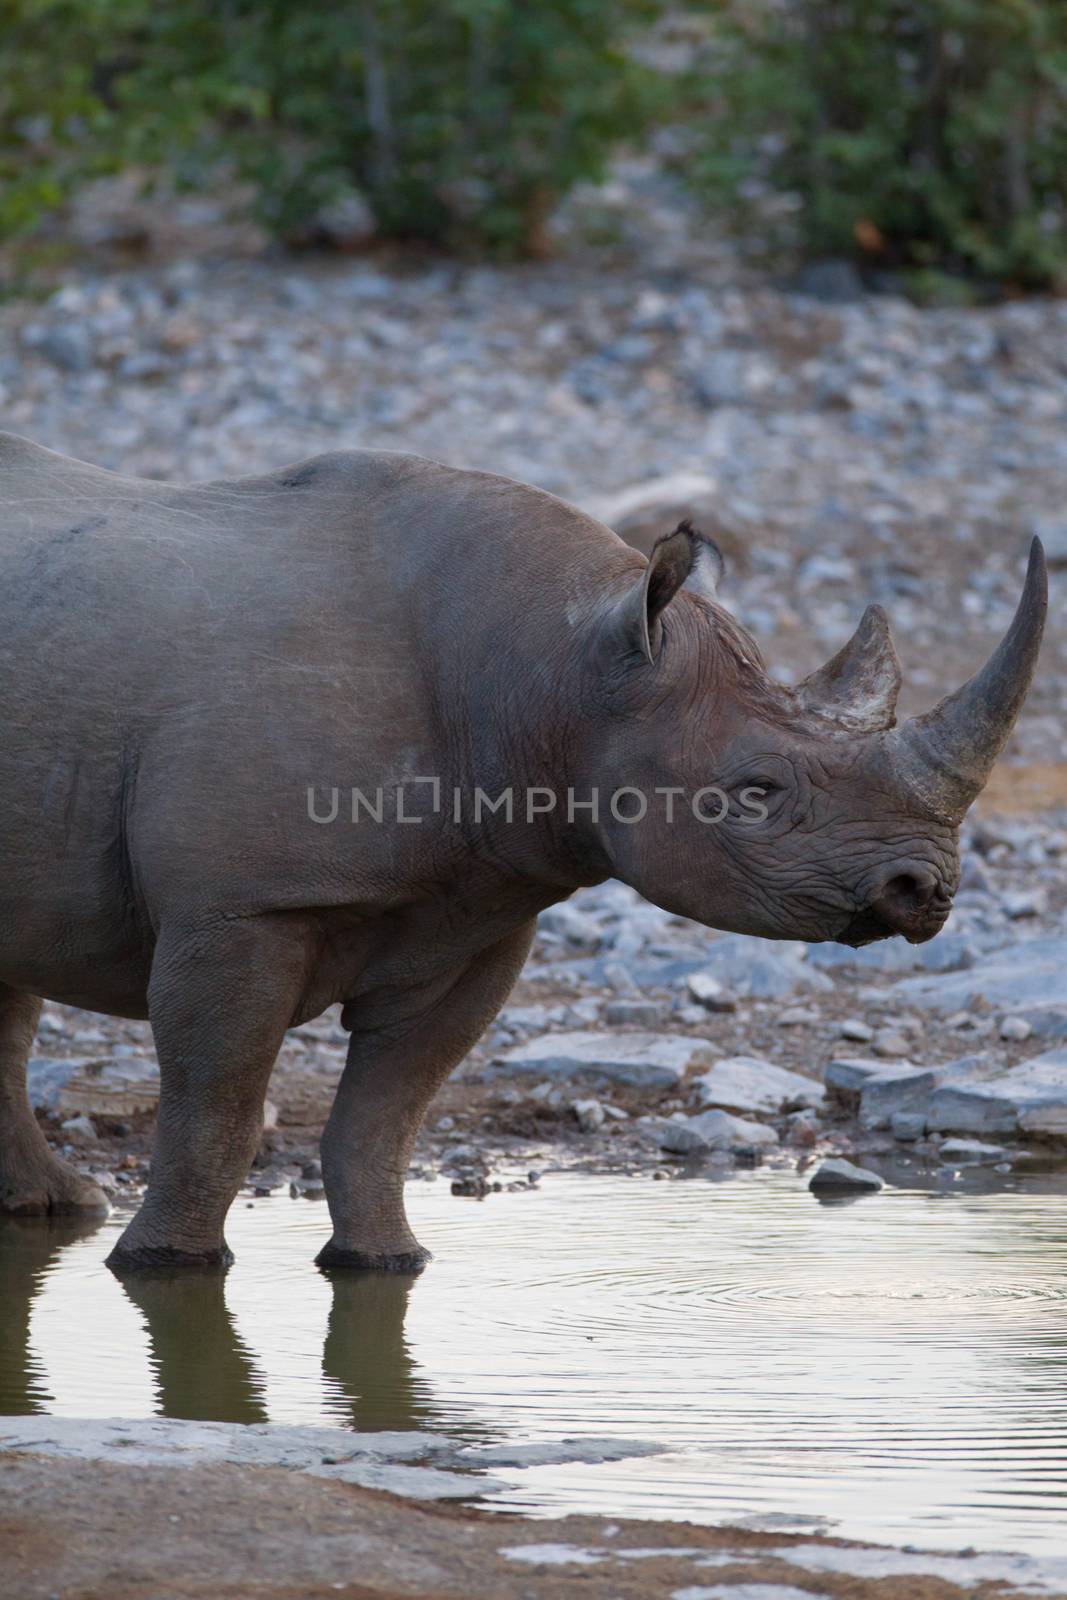 Black rhino in the wilderness by ozkanzozmen